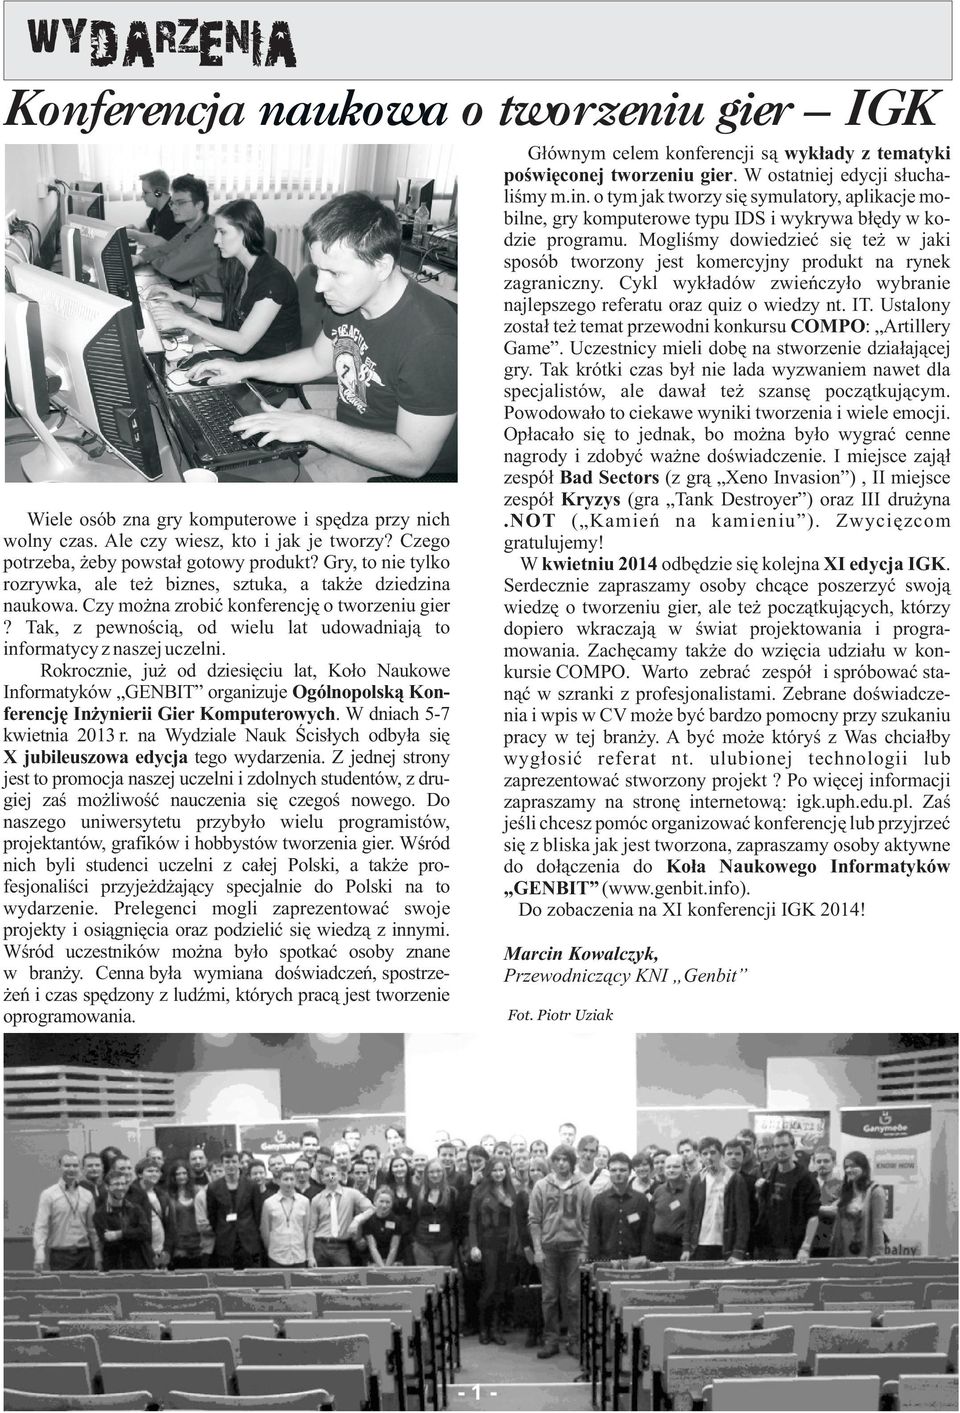 Rokrocznie, ju od dziesiêciu lat, Ko³o Naukowe Informatyków GENBIT organizuje Ogólnopolsk¹ Konferencjê In ynierii Gier Komputerowych. W dniach 5-7 kwietnia 2013 r.